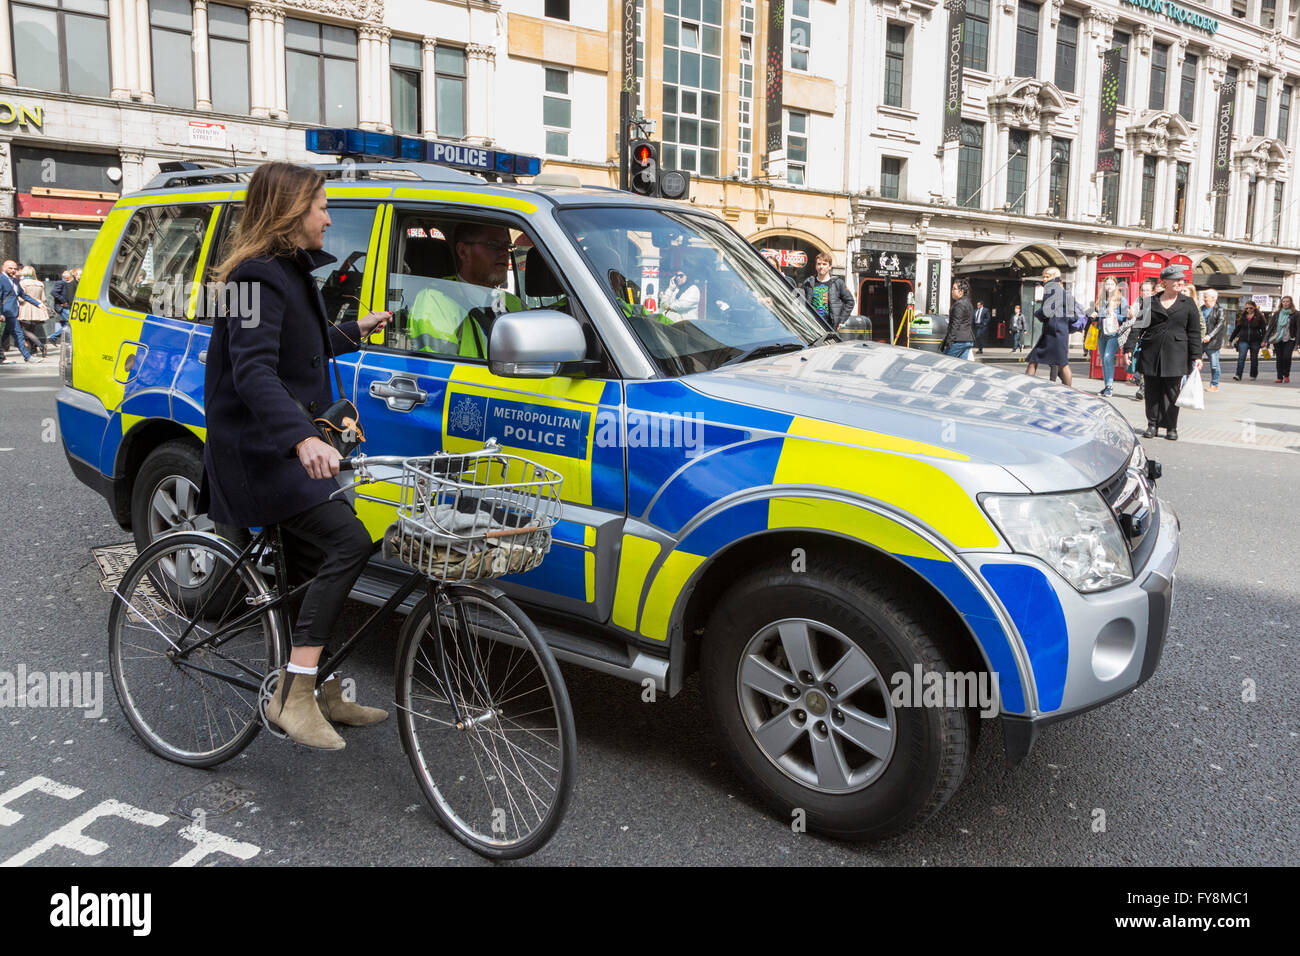 Officier de police dans une voiture de police parlant à un cycliste féminin, Londres, Angleterre, Royaume-Uni Banque D'Images